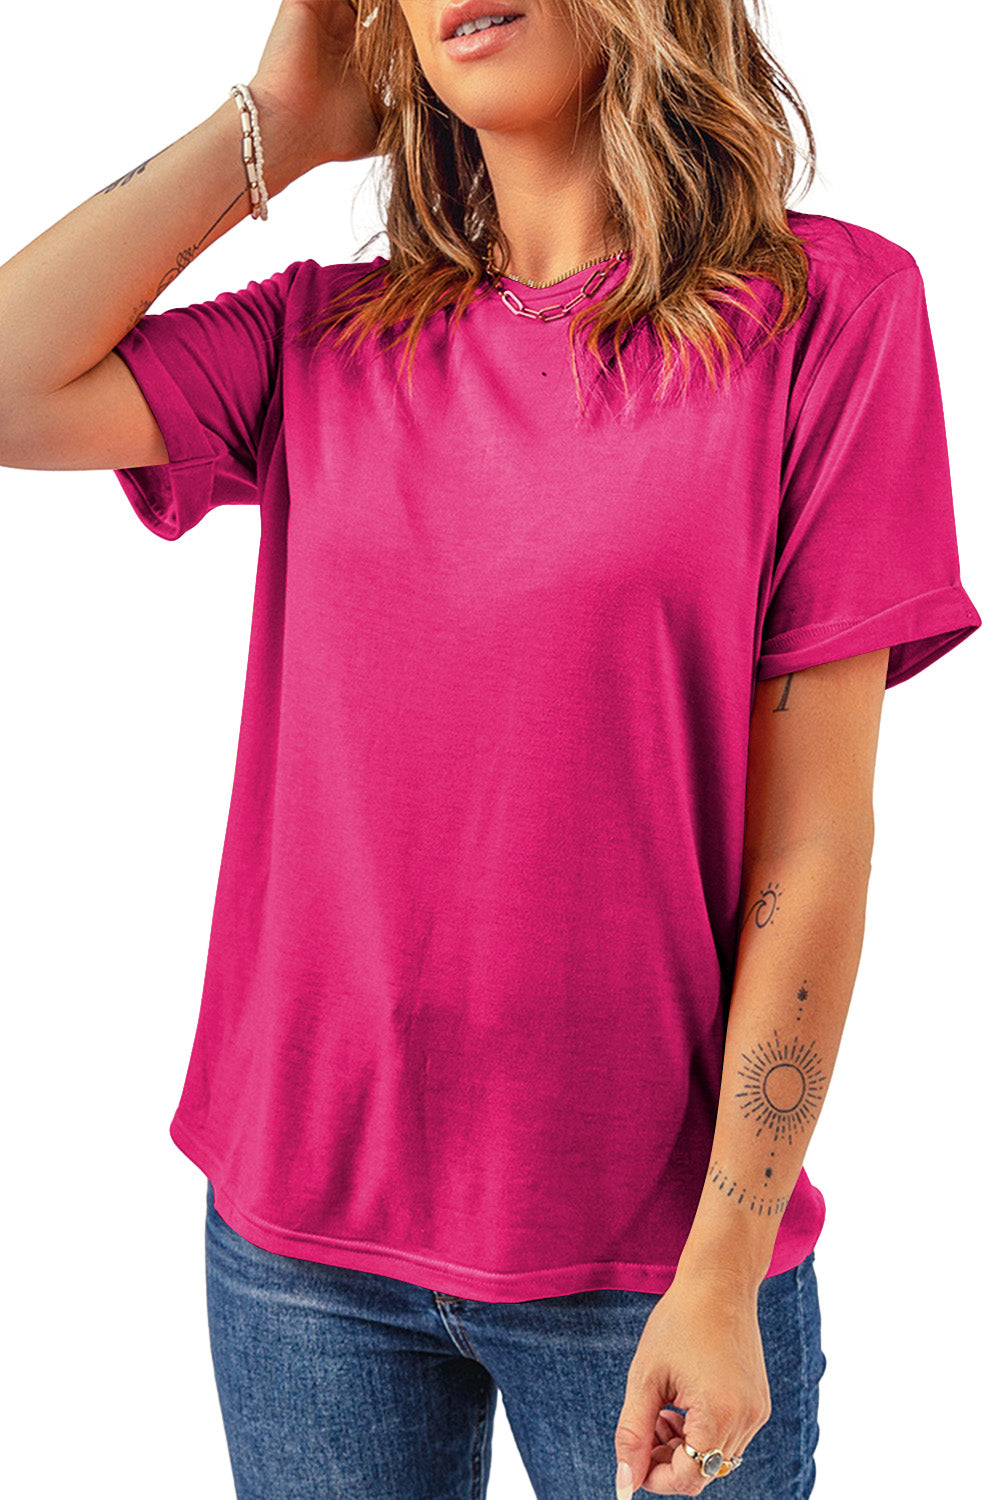 Rosarotes, lässiges, schlichtes T-Shirt mit Rundhalsausschnitt